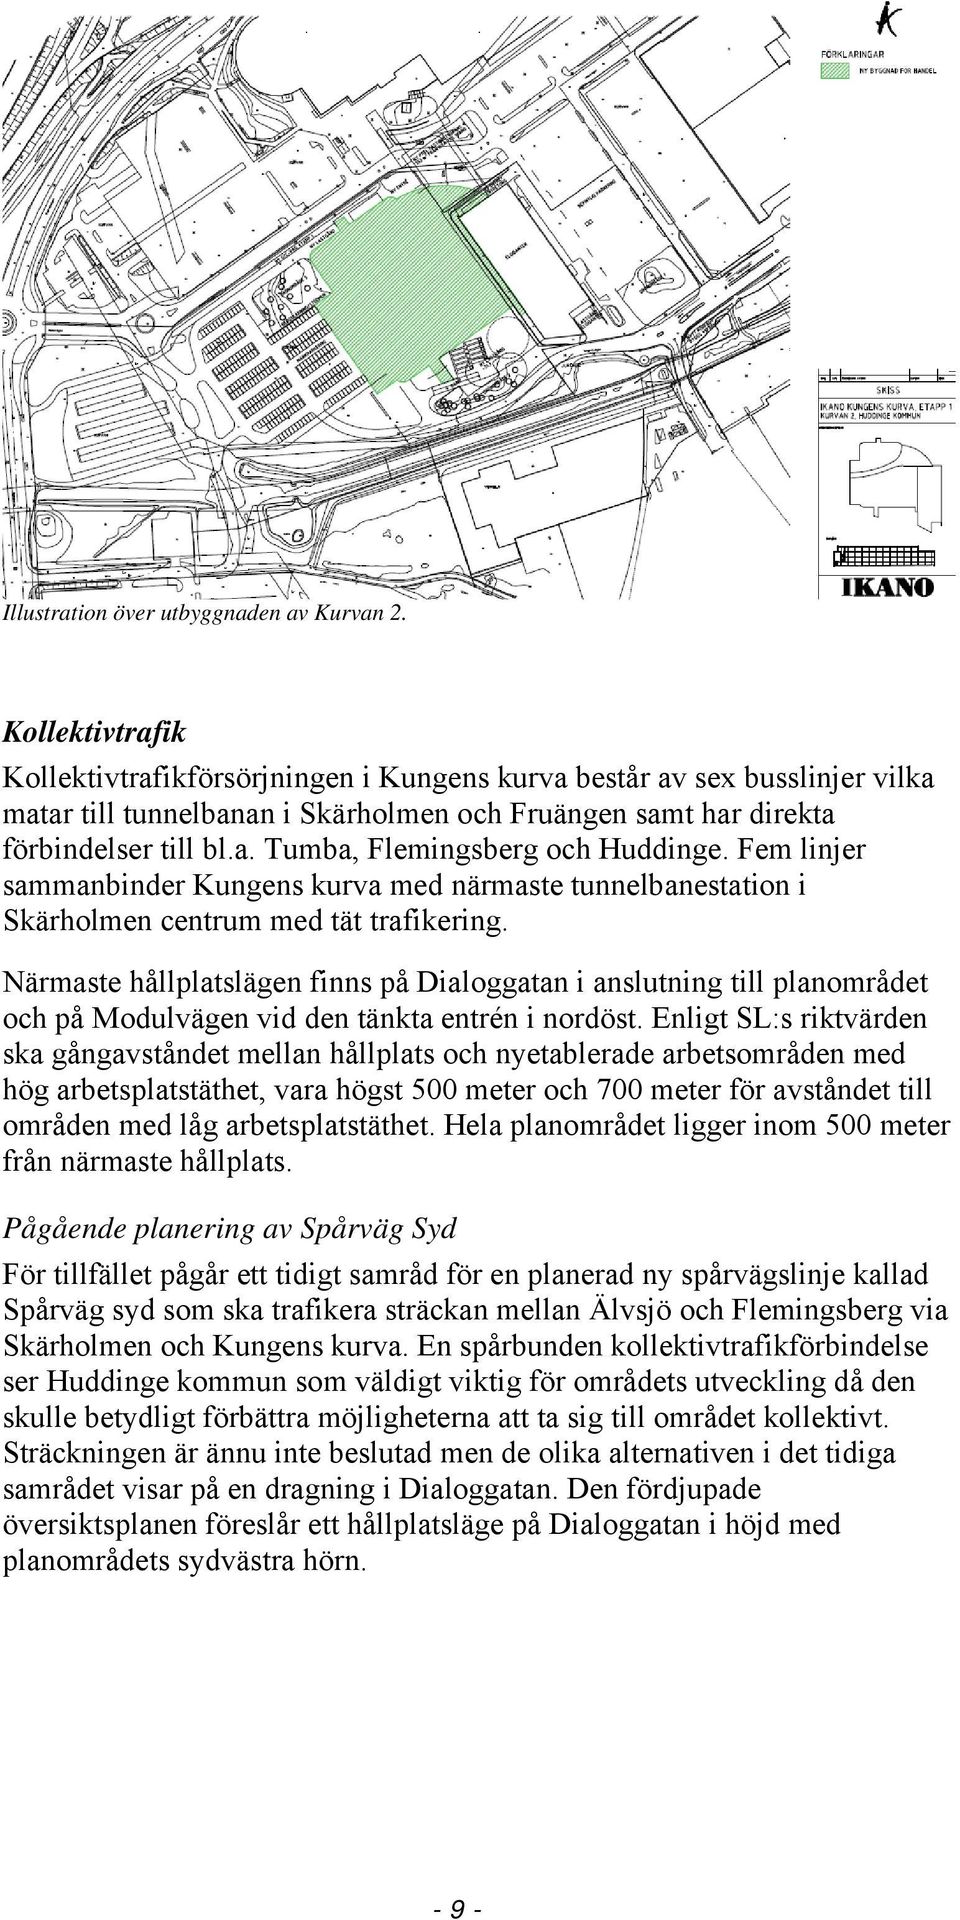 Fem linjer sammanbinder Kungens kurva med närmaste tunnelbanestation i Skärholmen centrum med tät trafikering.